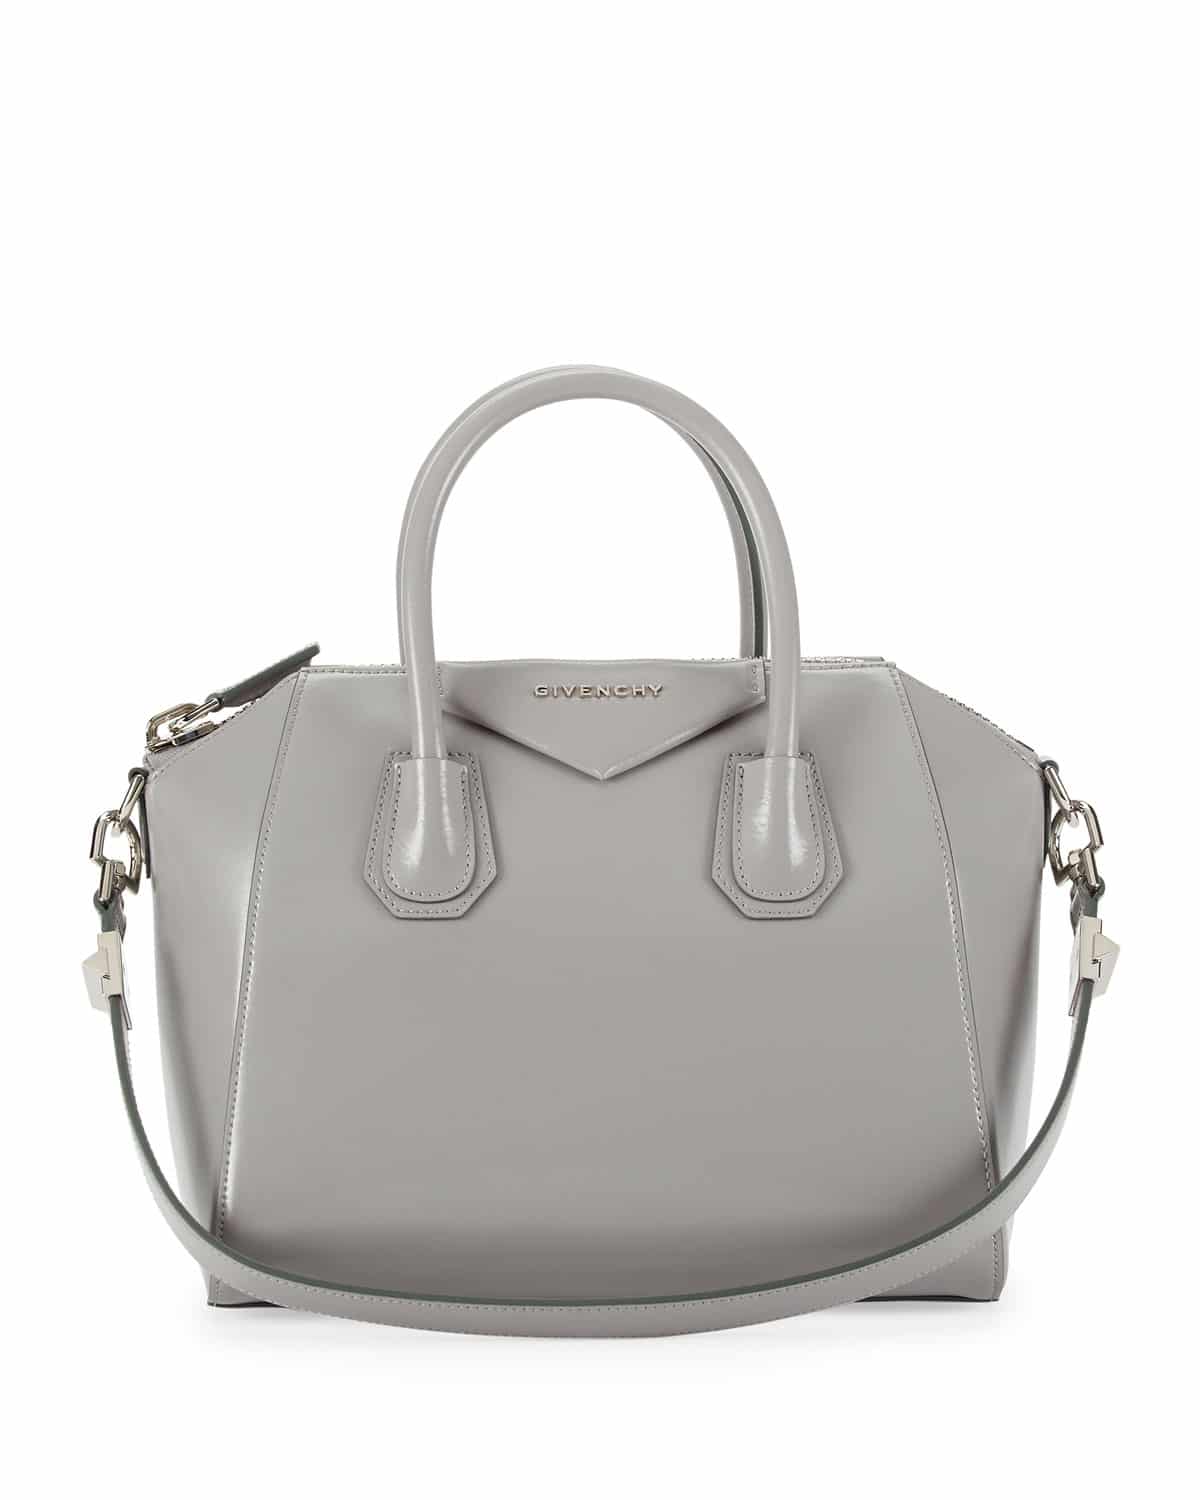 All hail the Givenchy Antigona handbag, Fab Fashion Fix